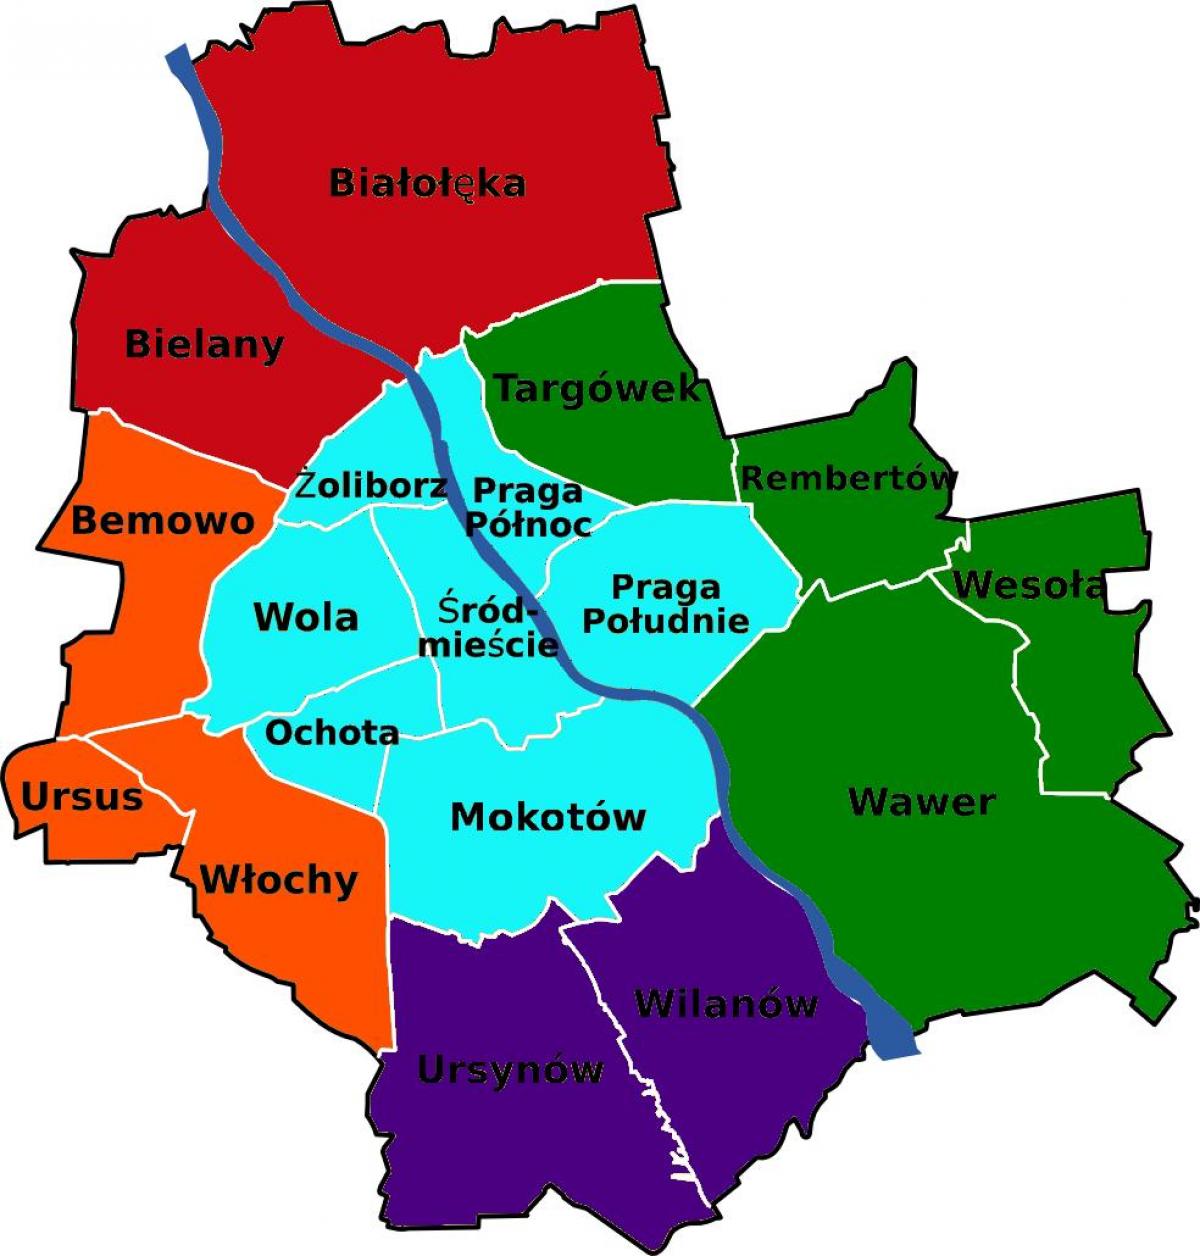 Mapa de Varsovia distritos 